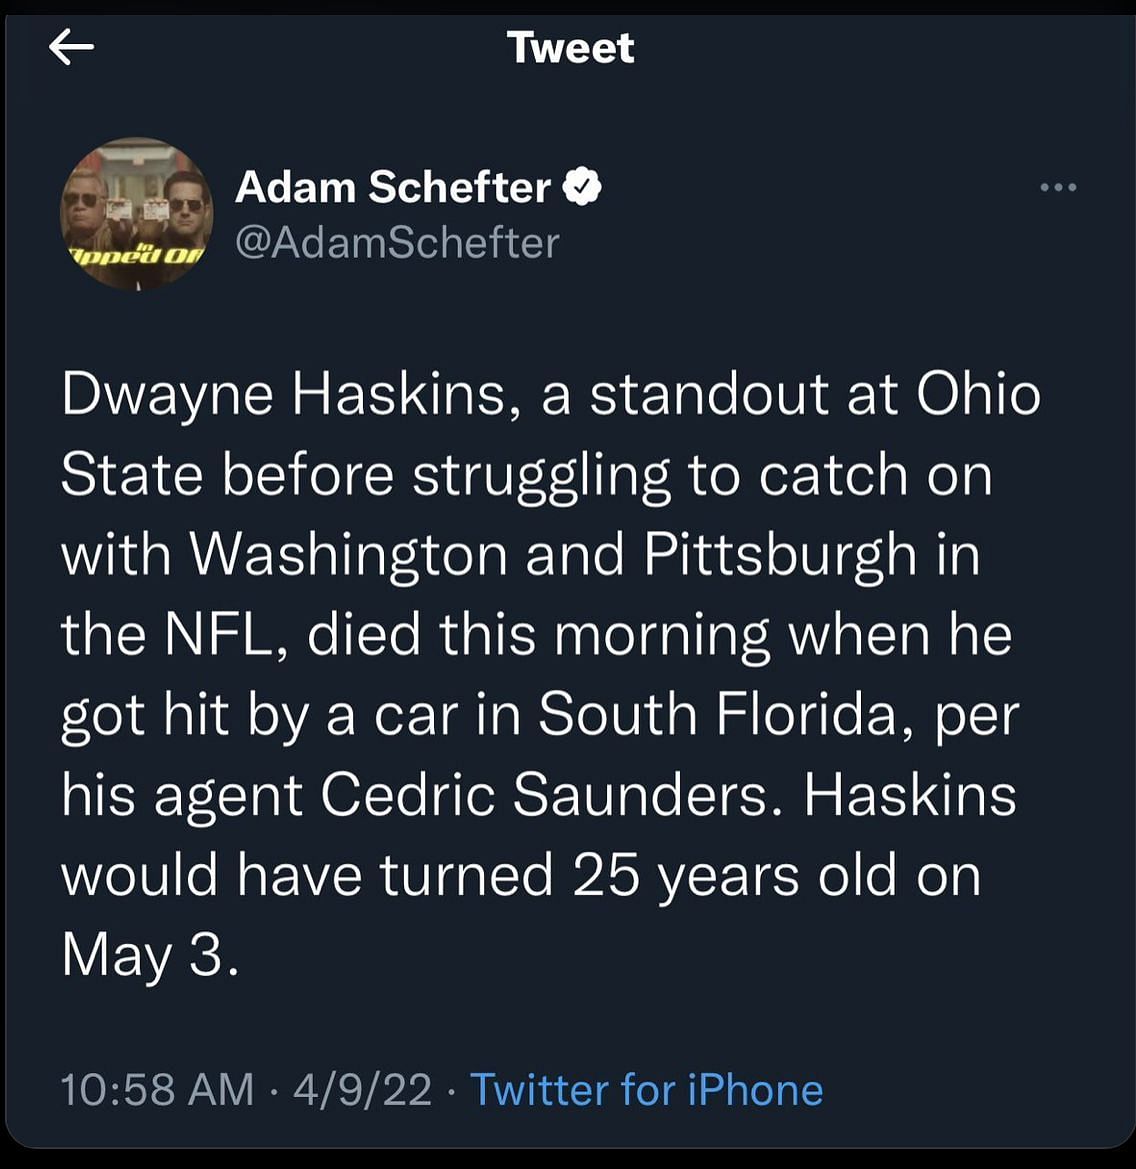 The now-deleted tweet of ESPN&#039;s Adam Schefter.